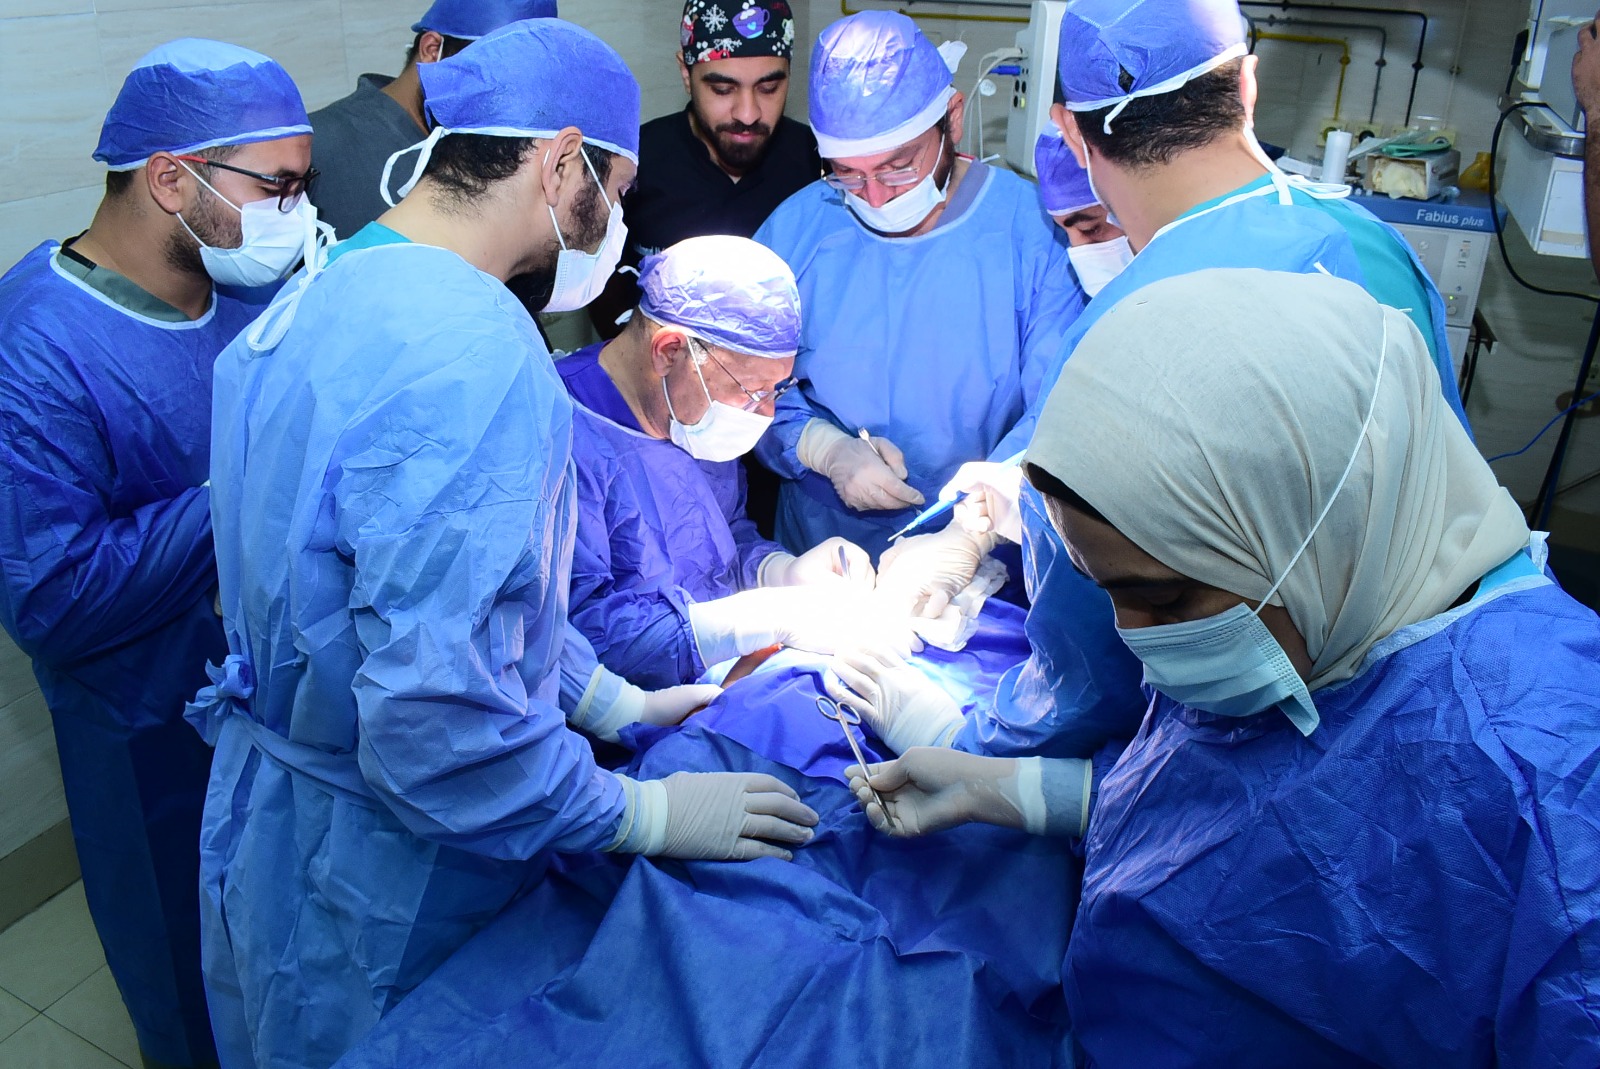 فريق طبي بوحدة الجراحات الميكروسكوبية بقيادة رئيس جامعة سوهاج يجري عملية جراحية لطفلة مصابة بشلل ولادي كامل